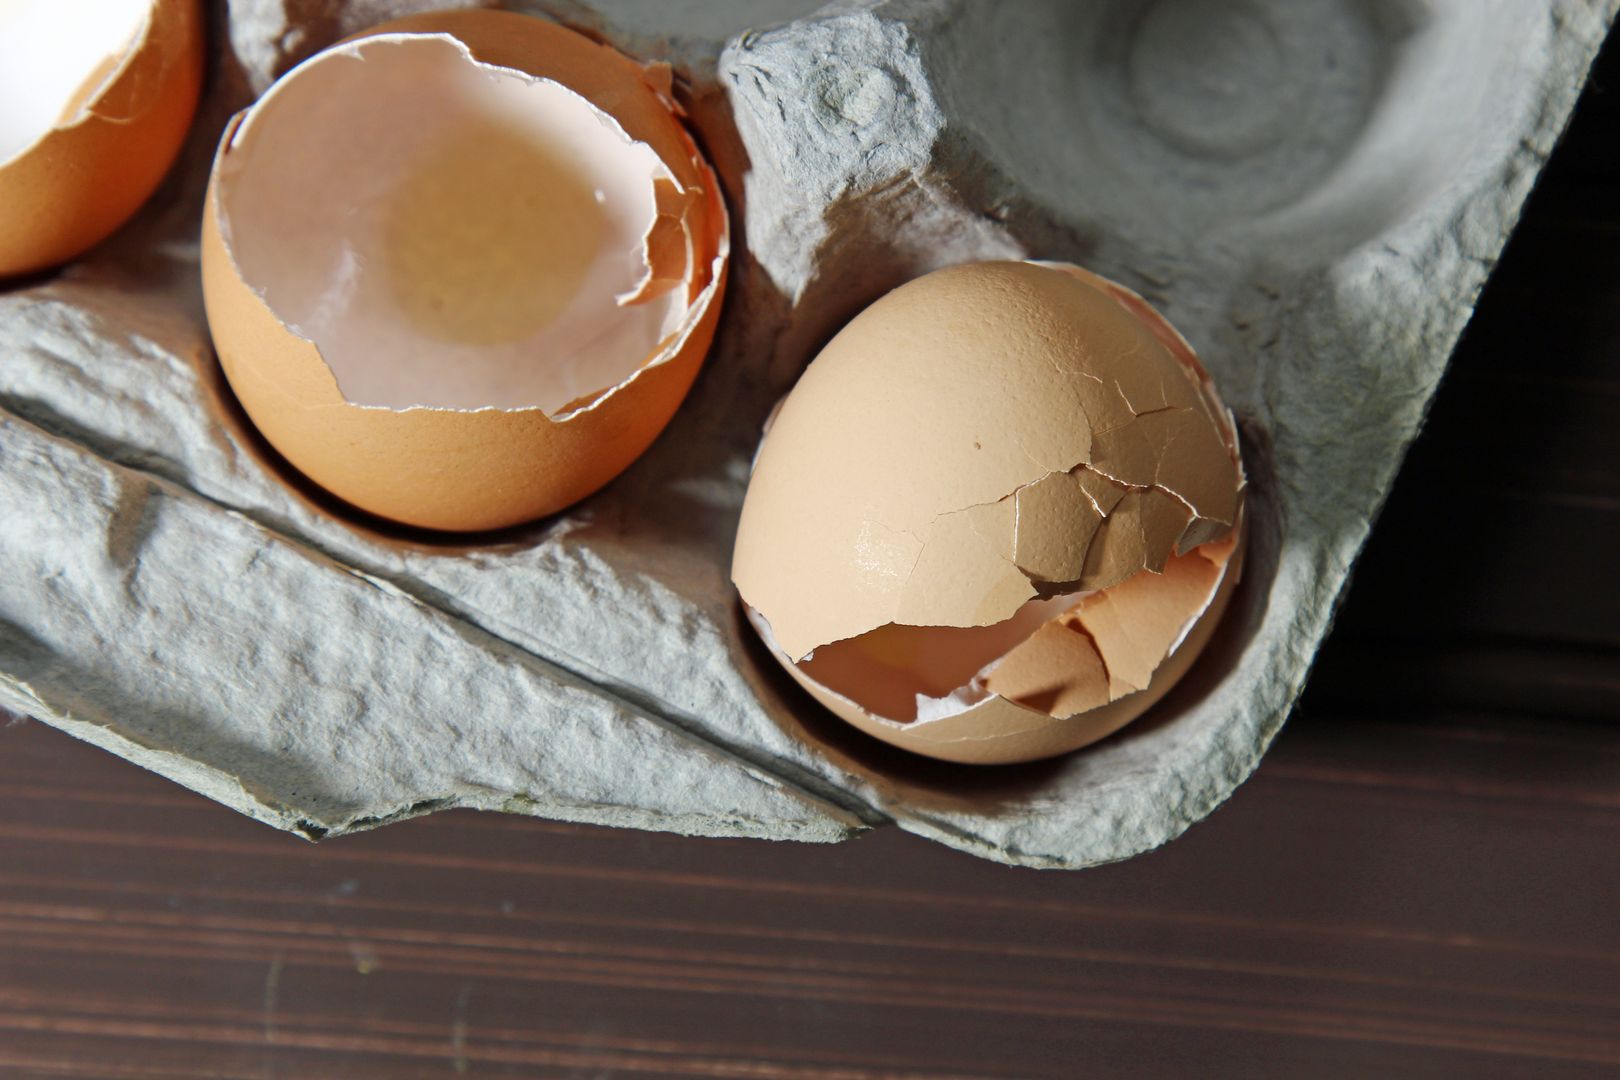 Nigdy więcej nie wyrzucaj skorupek jajek - są cenniejsze, niż myślisz